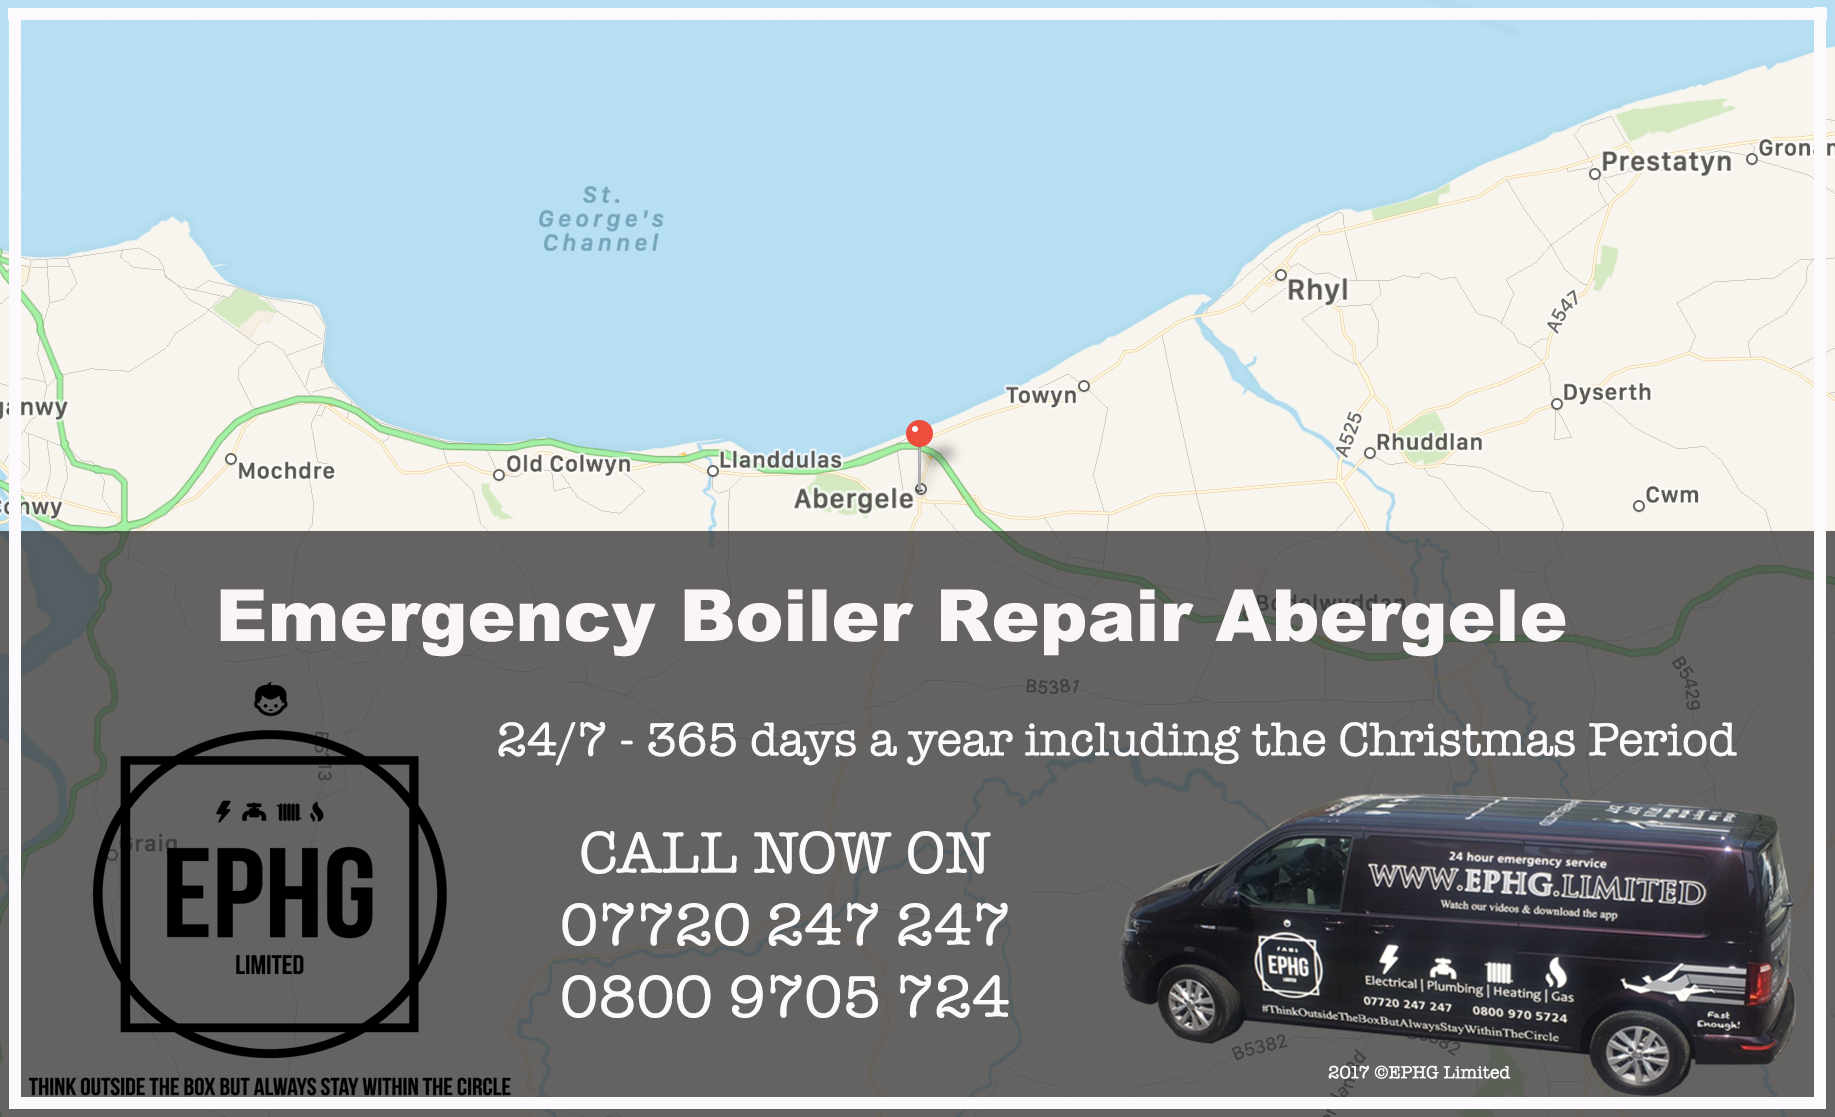 24 Hour Emergency Boiler Repair Abergele